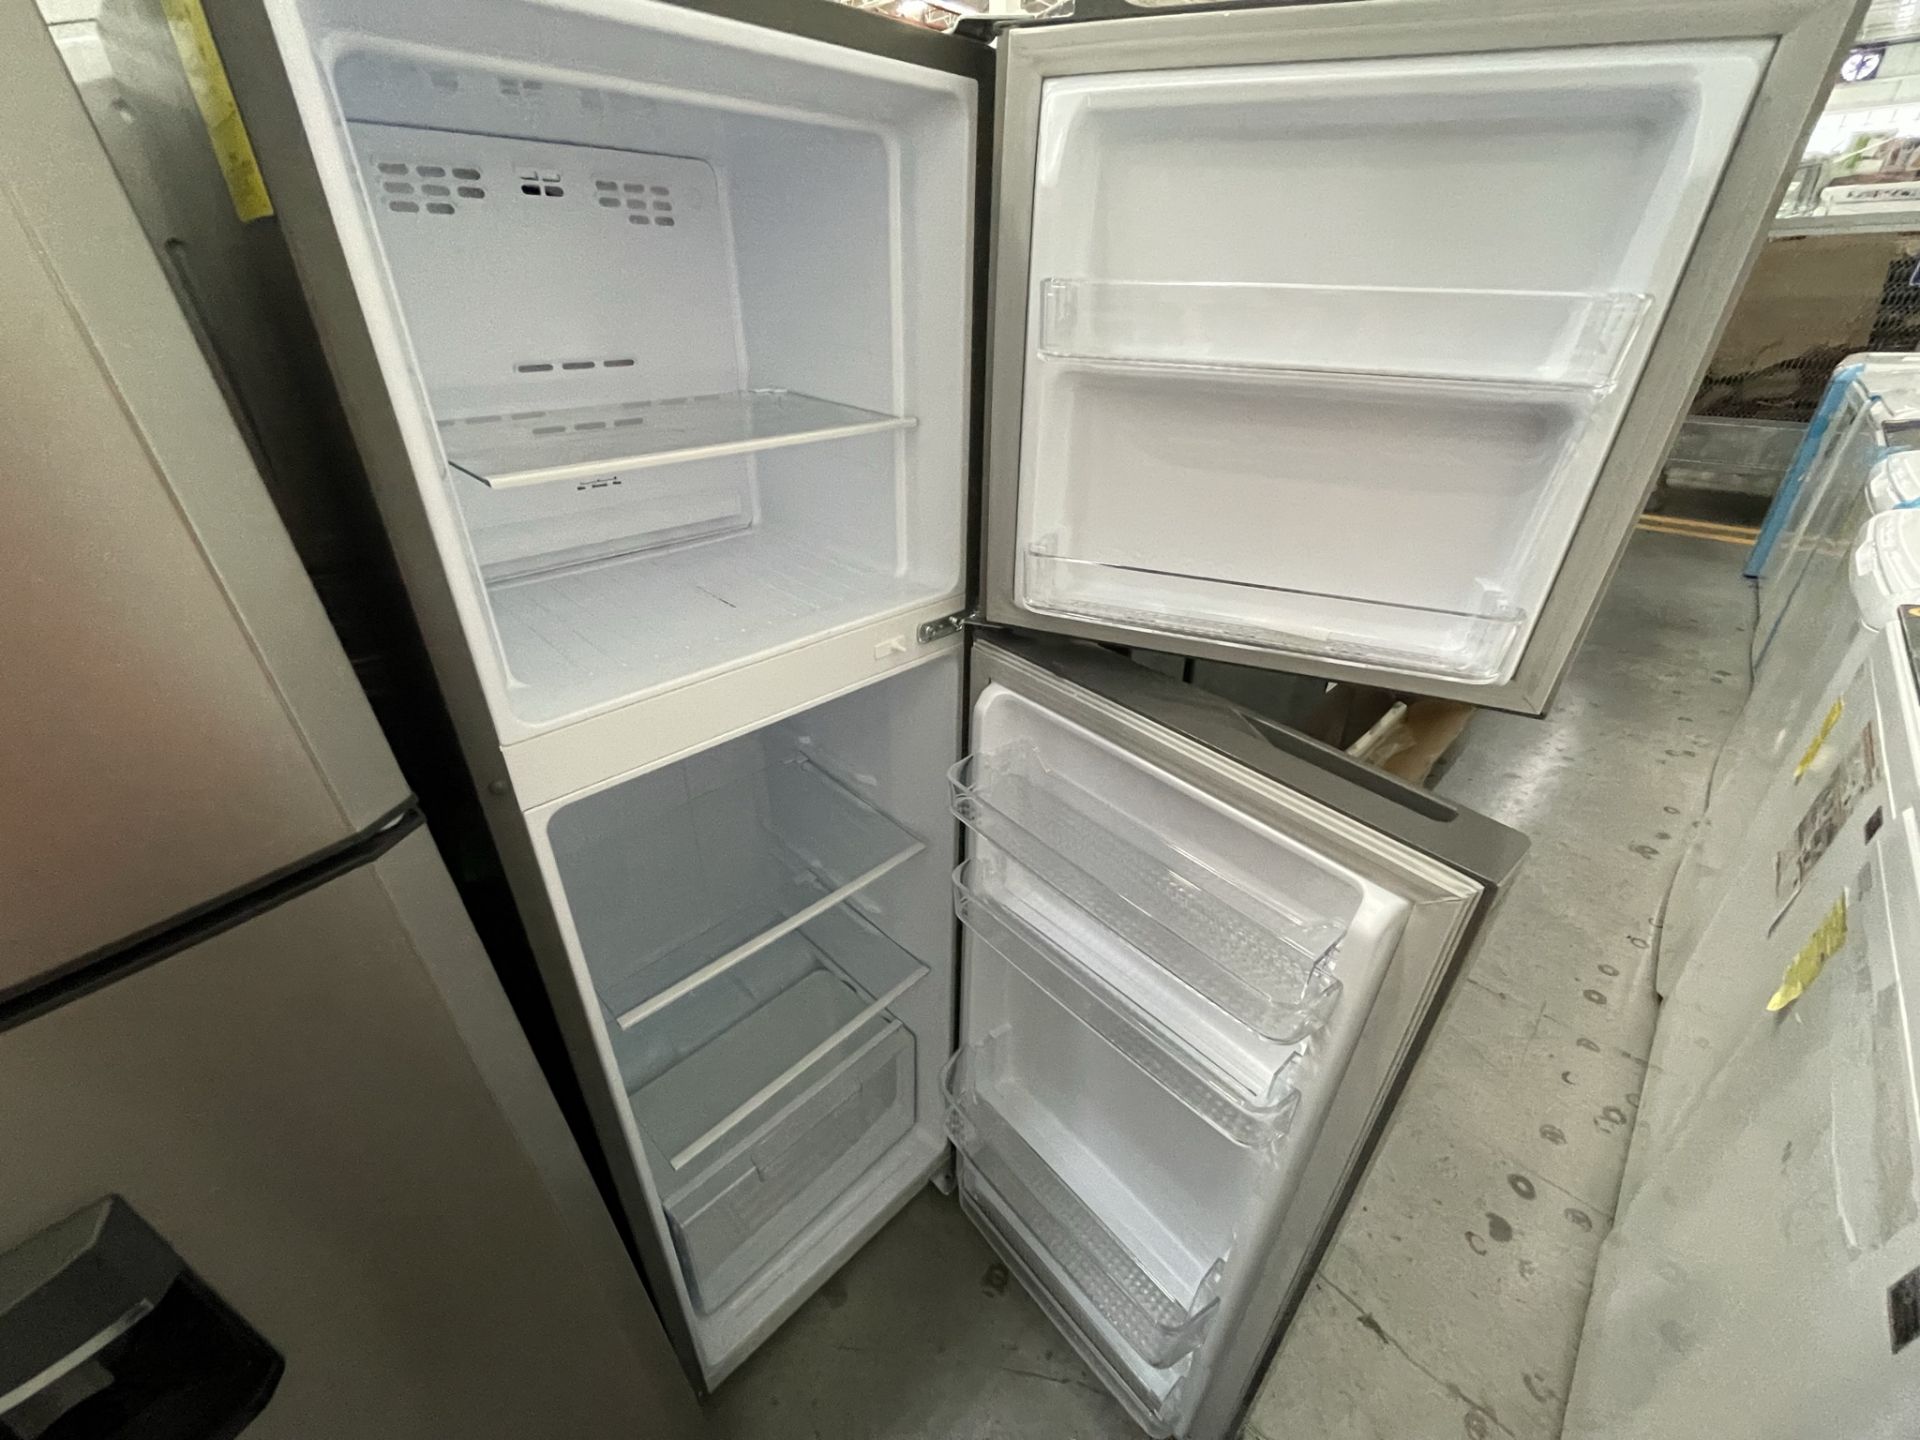 Lote de 2 Refrigeradores contiene: 1 Refrigerador Marca WINIA, Modelo DRF25210GN, Serie 370028, Col - Image 18 of 28